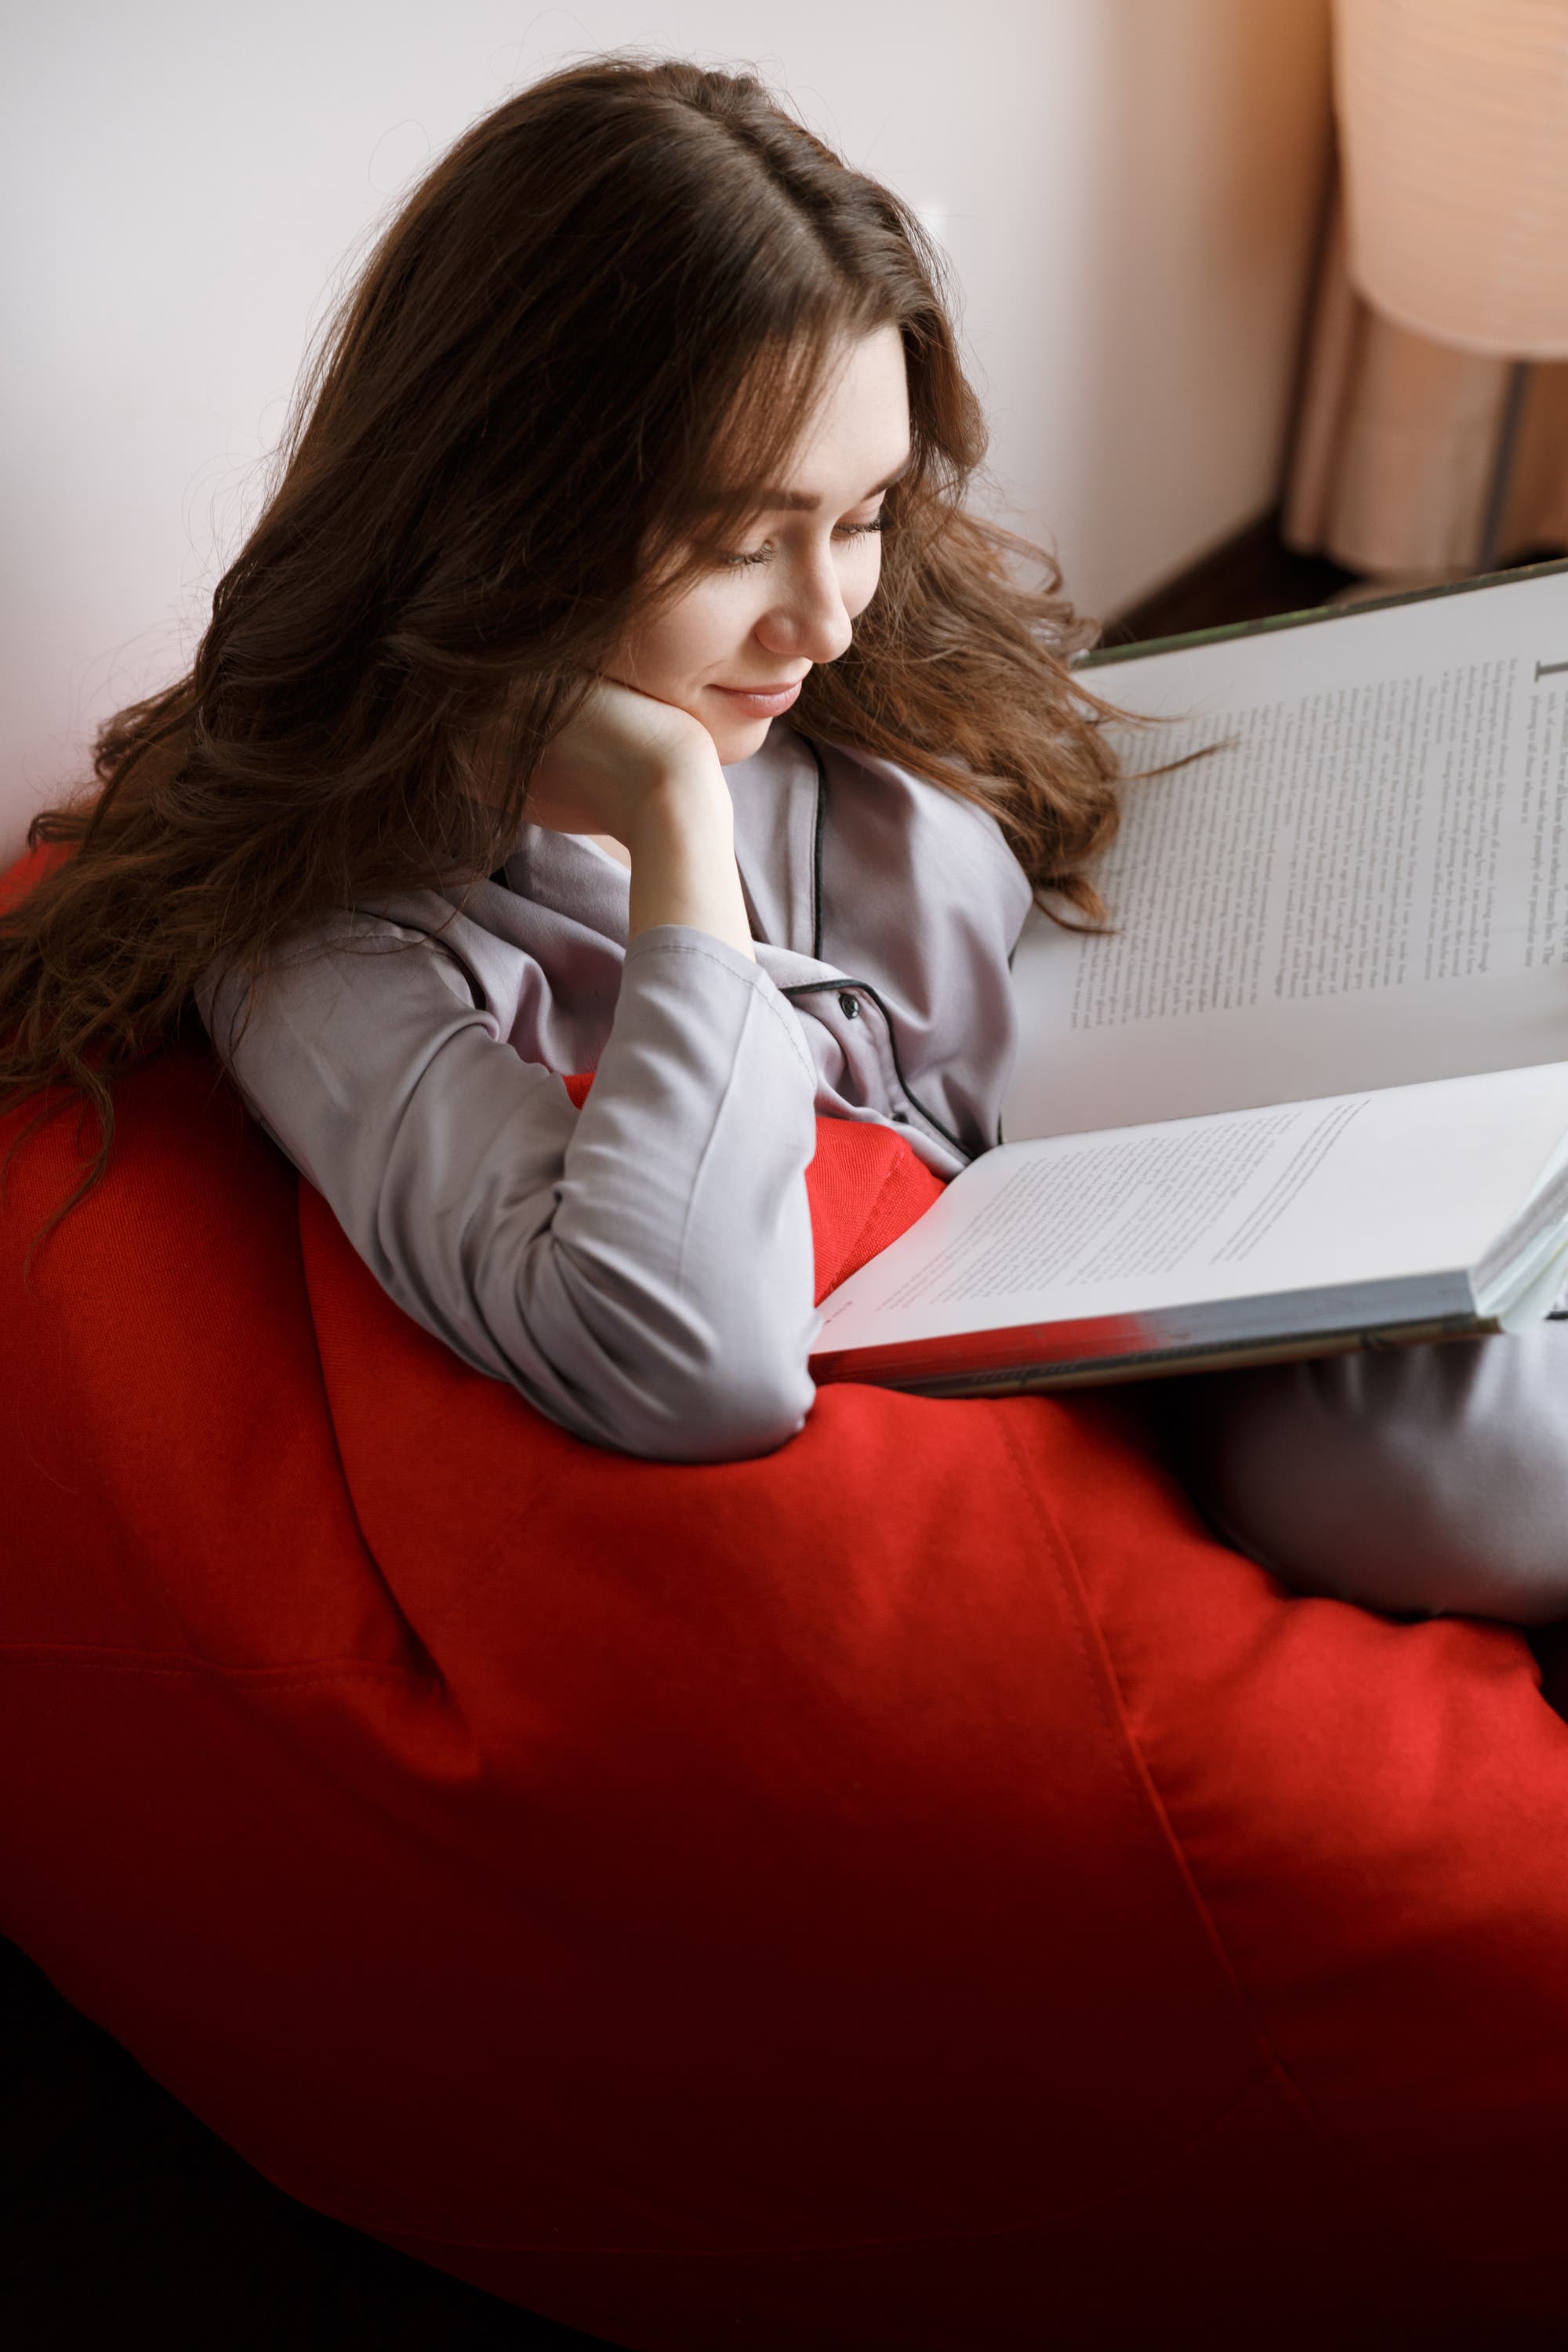 Eine junge brünette Frau sitzt mit aufgestütztem Kopf auf einem roten Sofa und liest ein Buch.